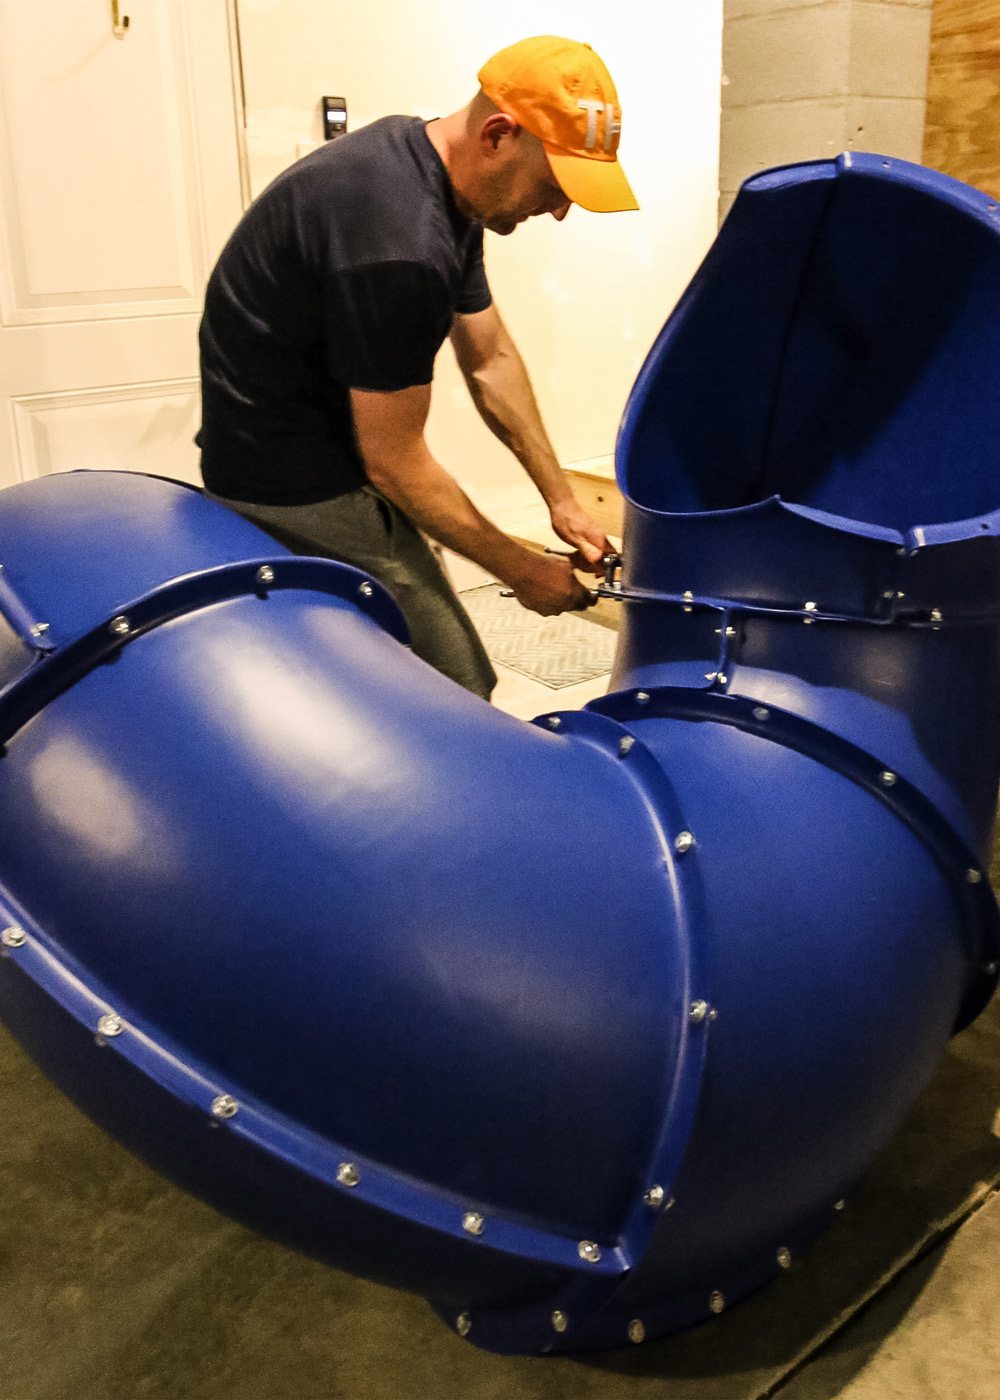 A man putting together a large blue slide